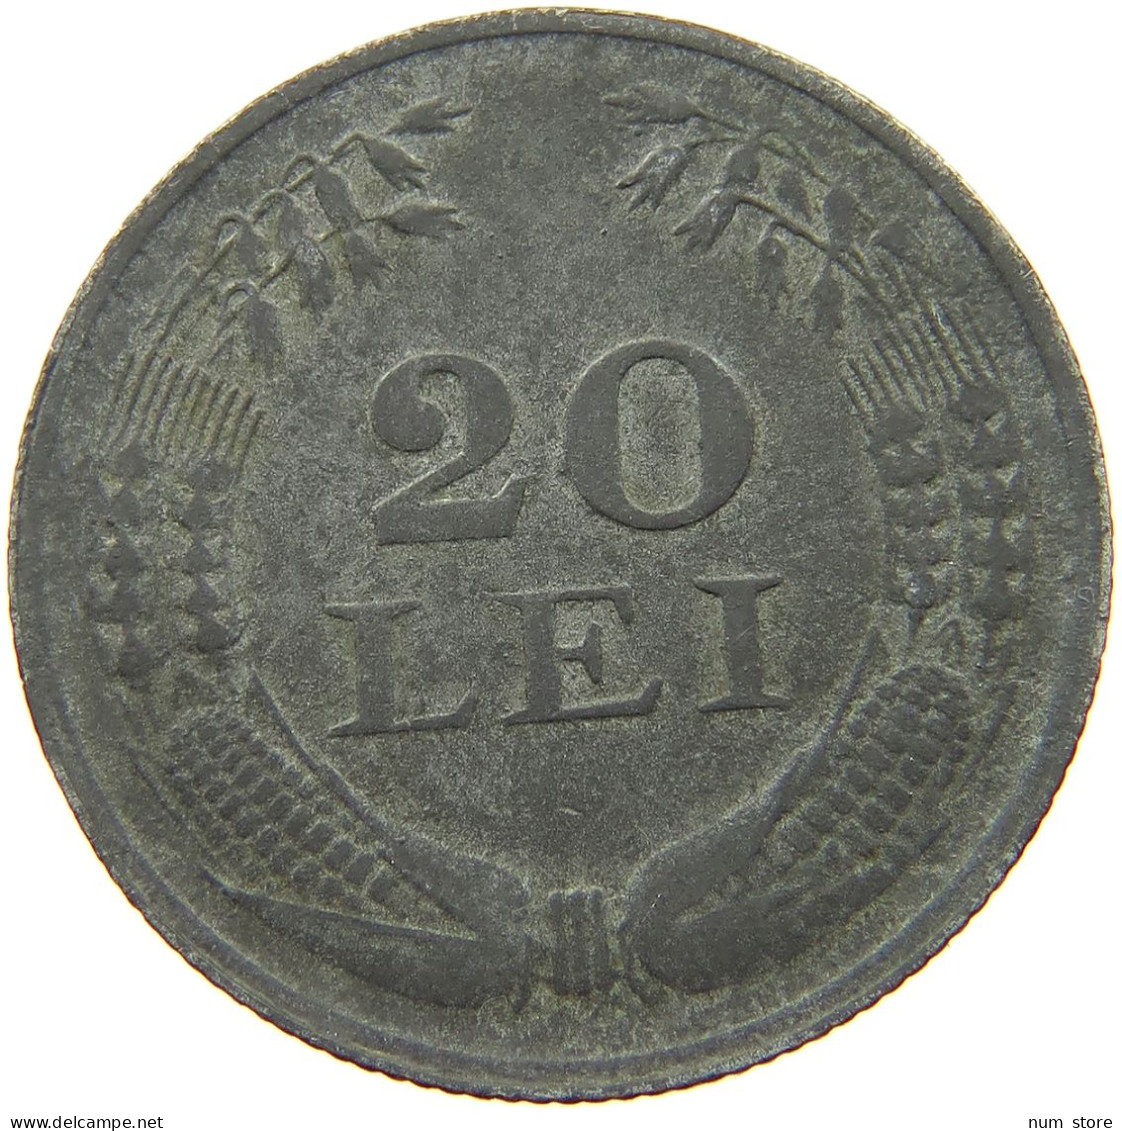 ROMANIA 20 LEI 1942 #s042 0263 - Roumanie